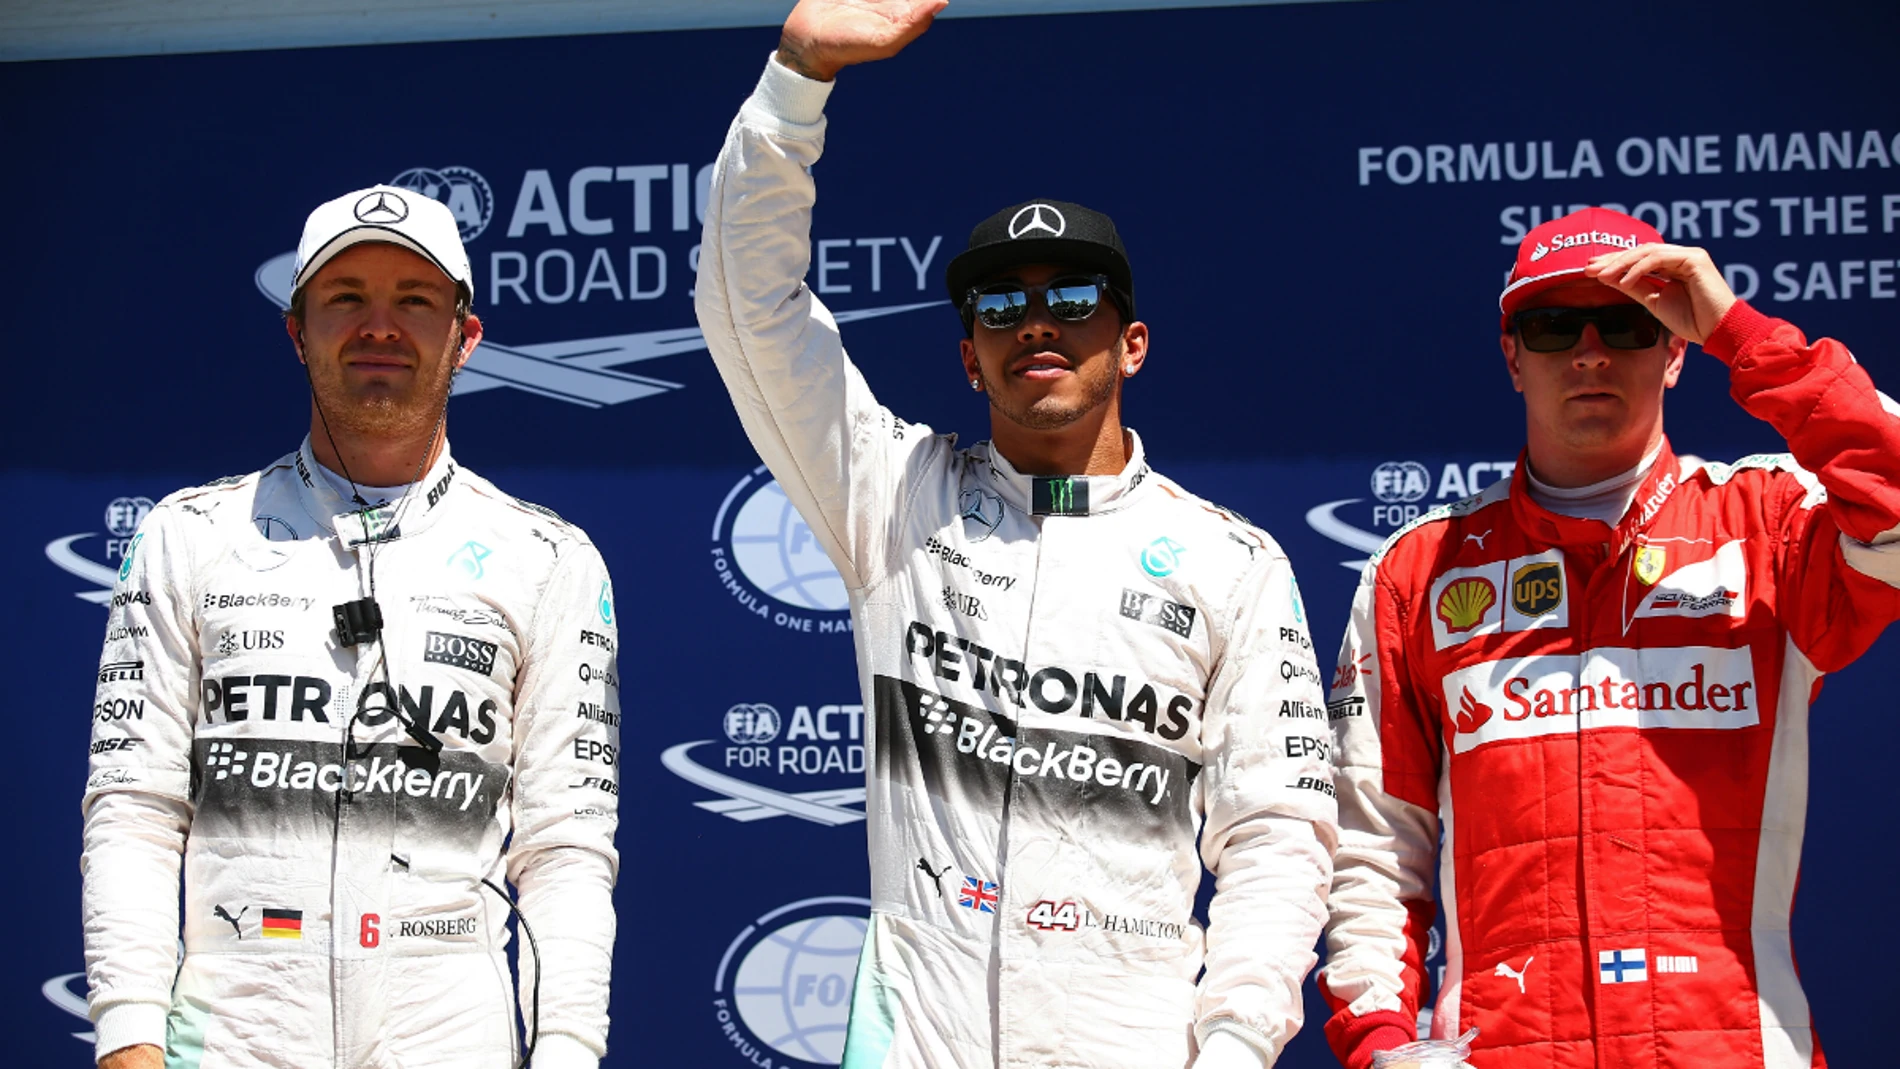 Hamilton, Rosberg y Raikkonen, los más rápidos de Q3